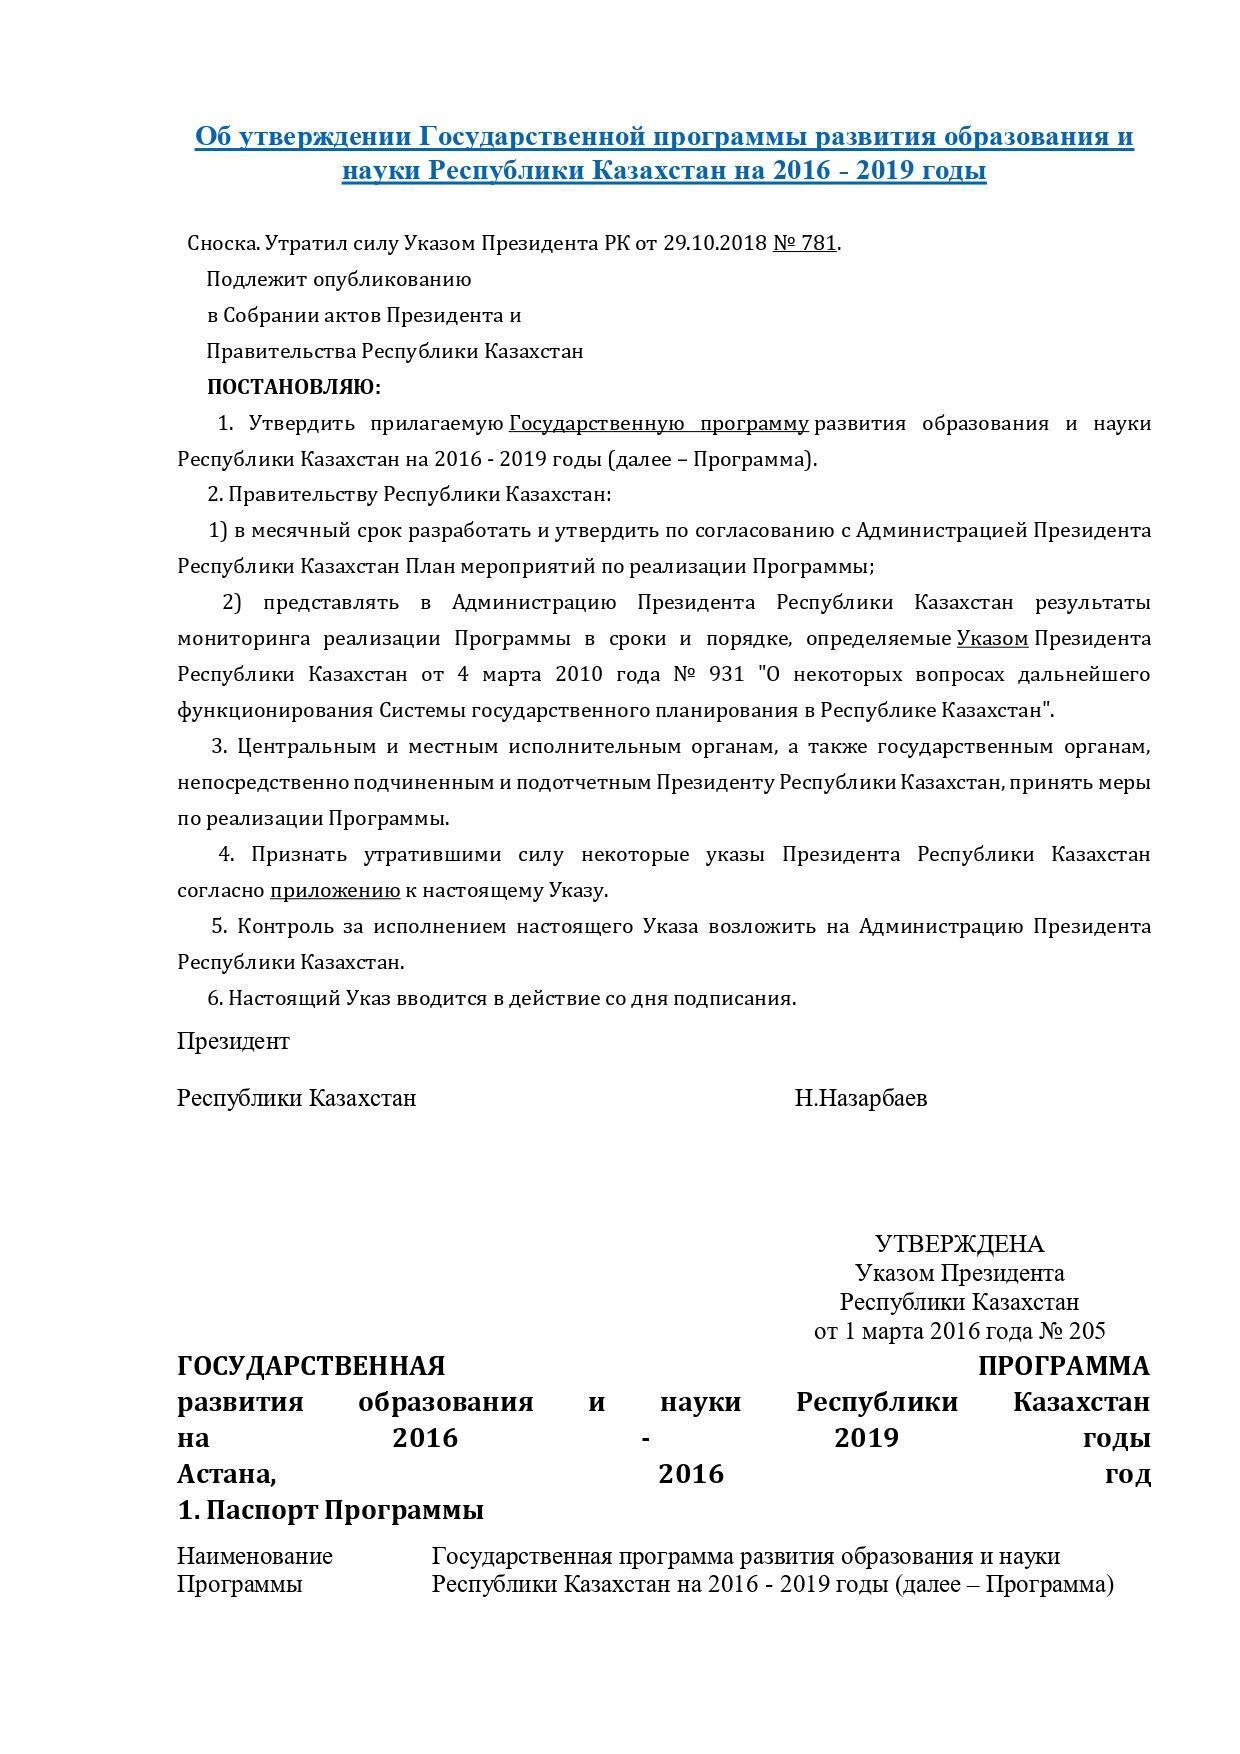 Об утверждении Государственной программы развития образования и науки Республики Казахстан на 2016 - 2019 годы